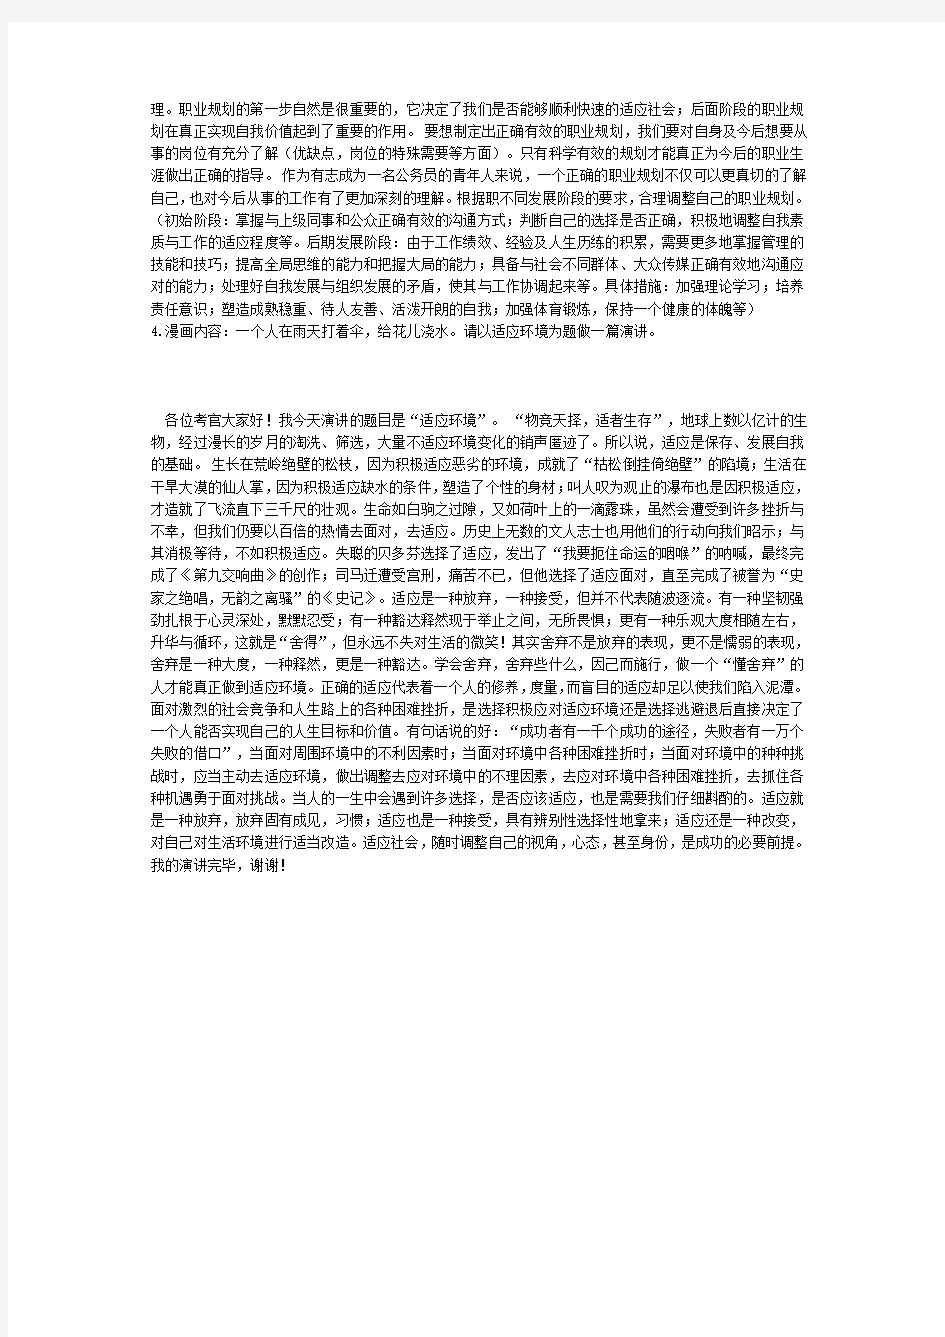  河北省公务员面试真题2015年5月30日下午